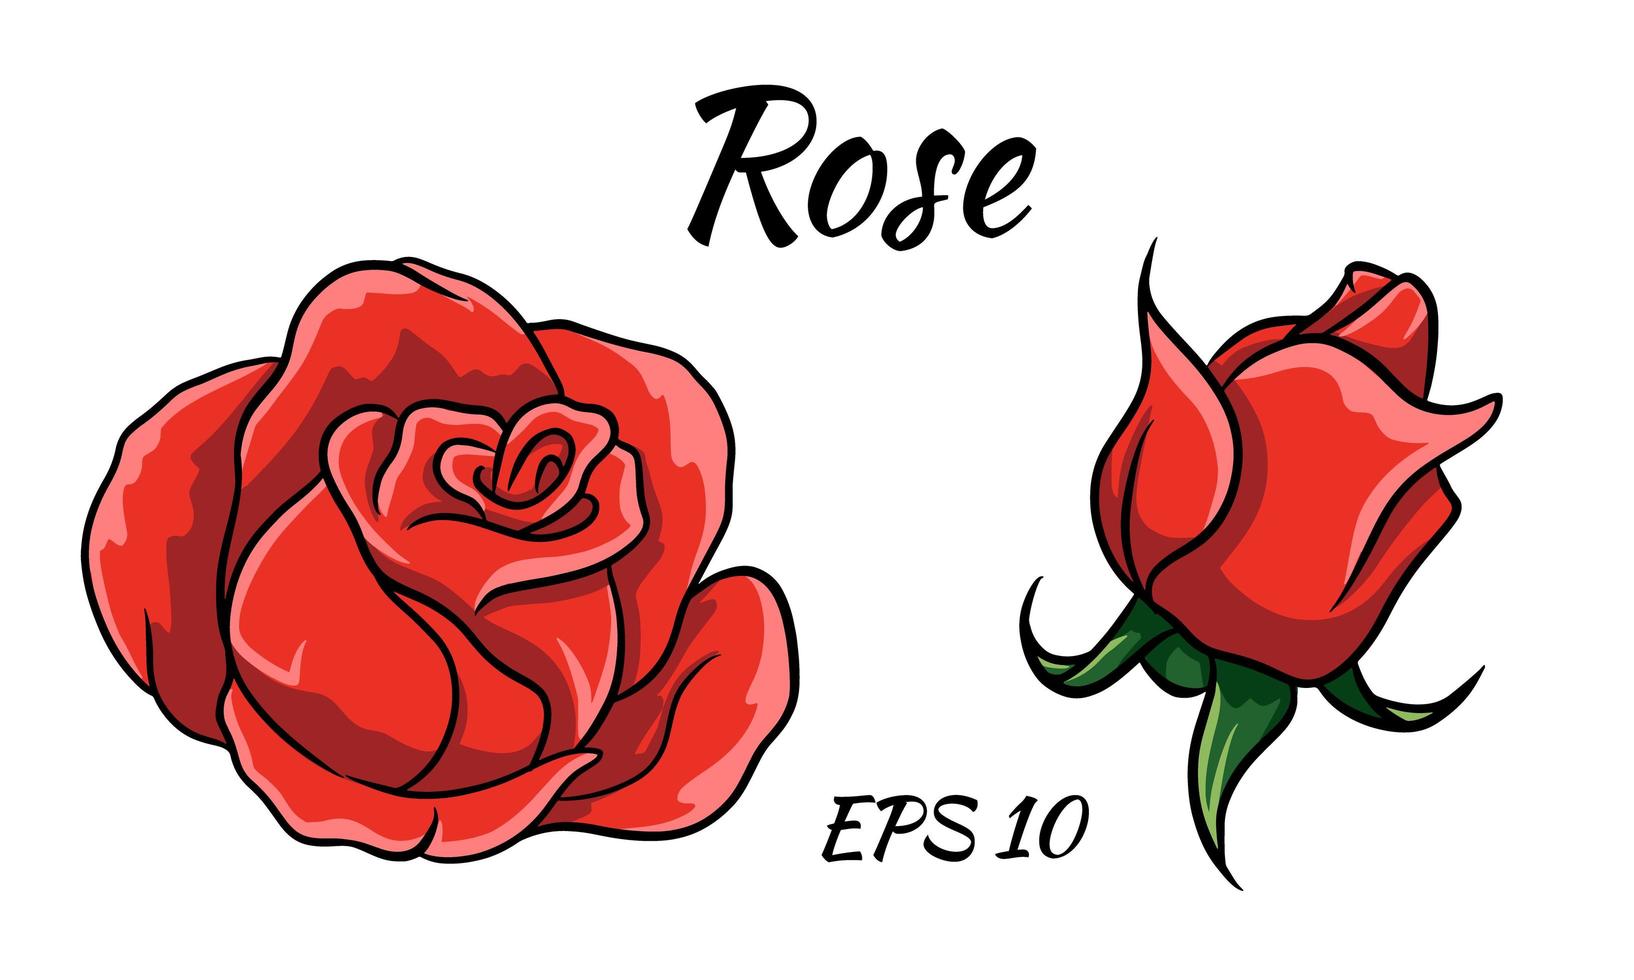 rode roos cartoon stijl op een witte achtergrond. vector